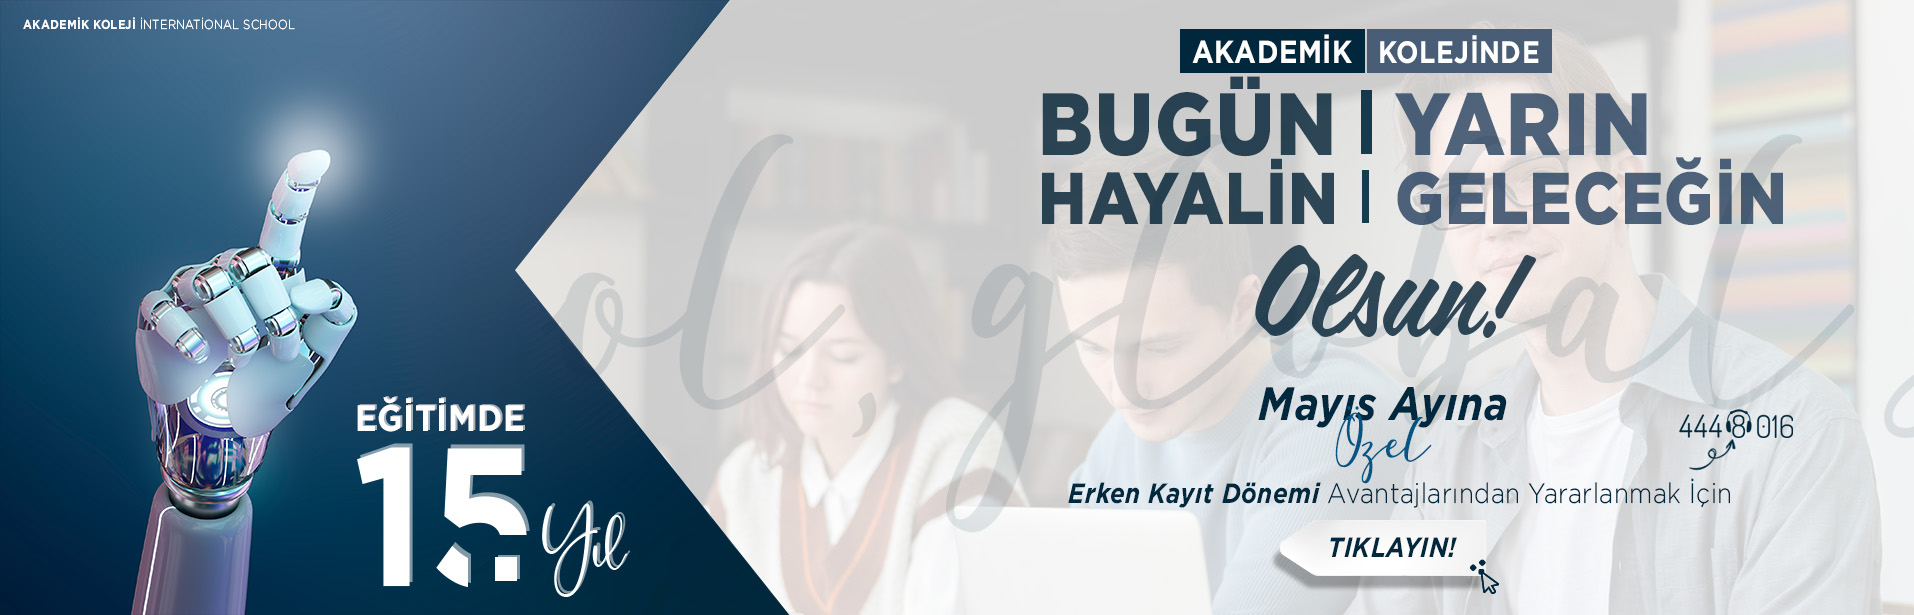 Akademik Koleji Erken Kayıt - Bursa